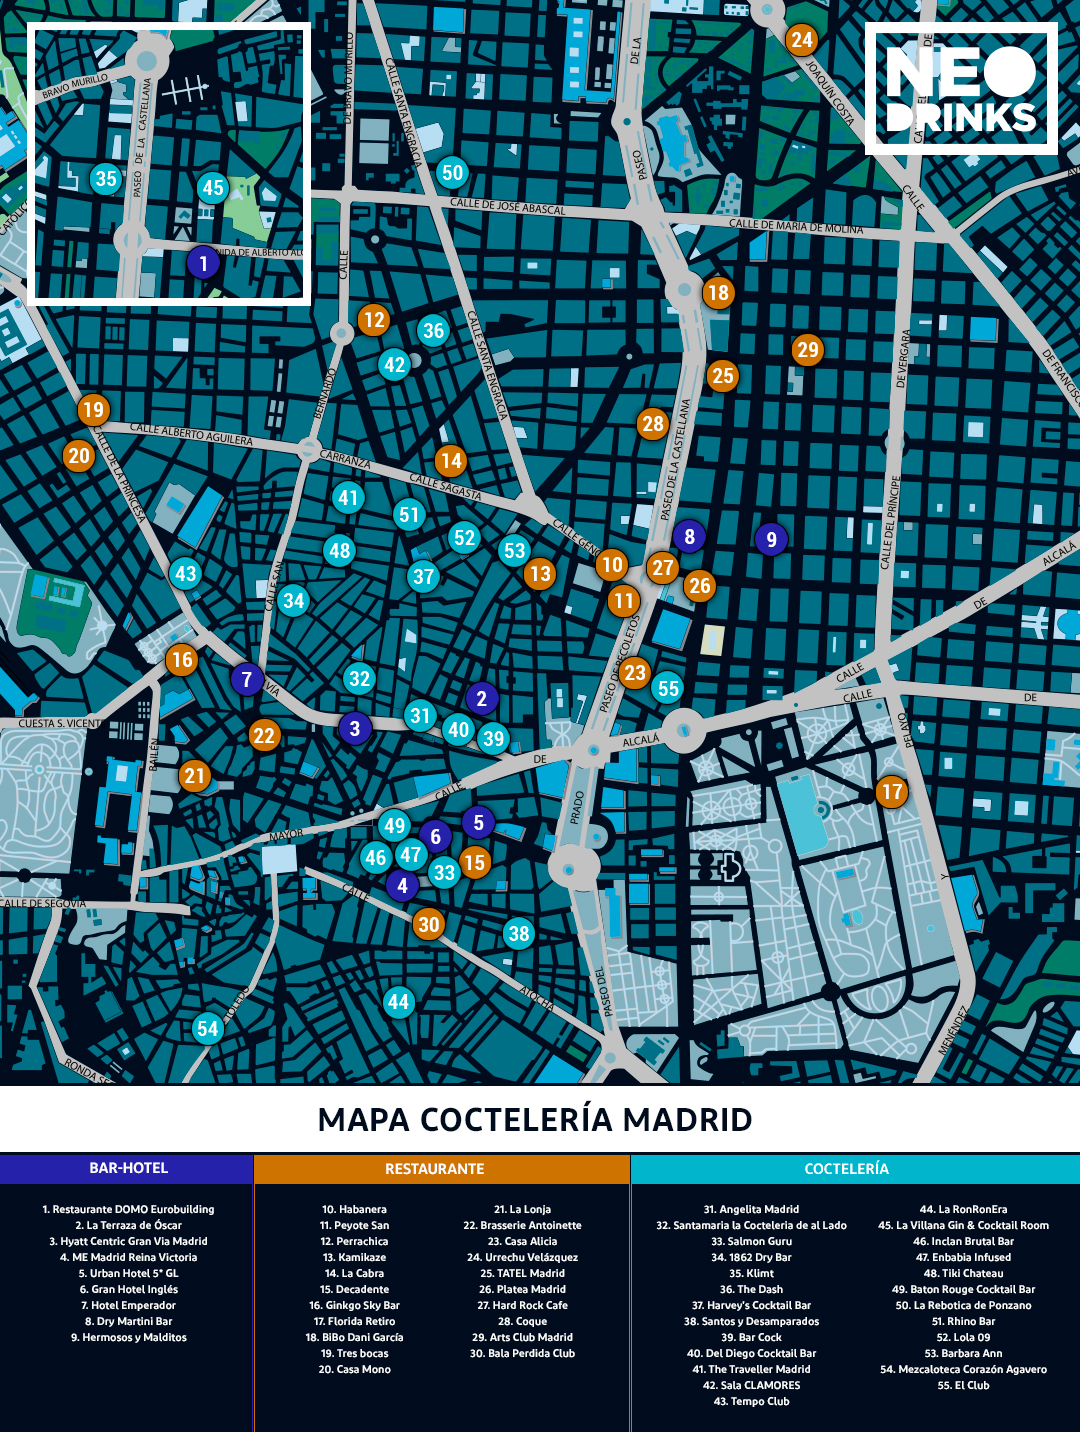 Mapa De La Coctelería De Madrid Neodrinks